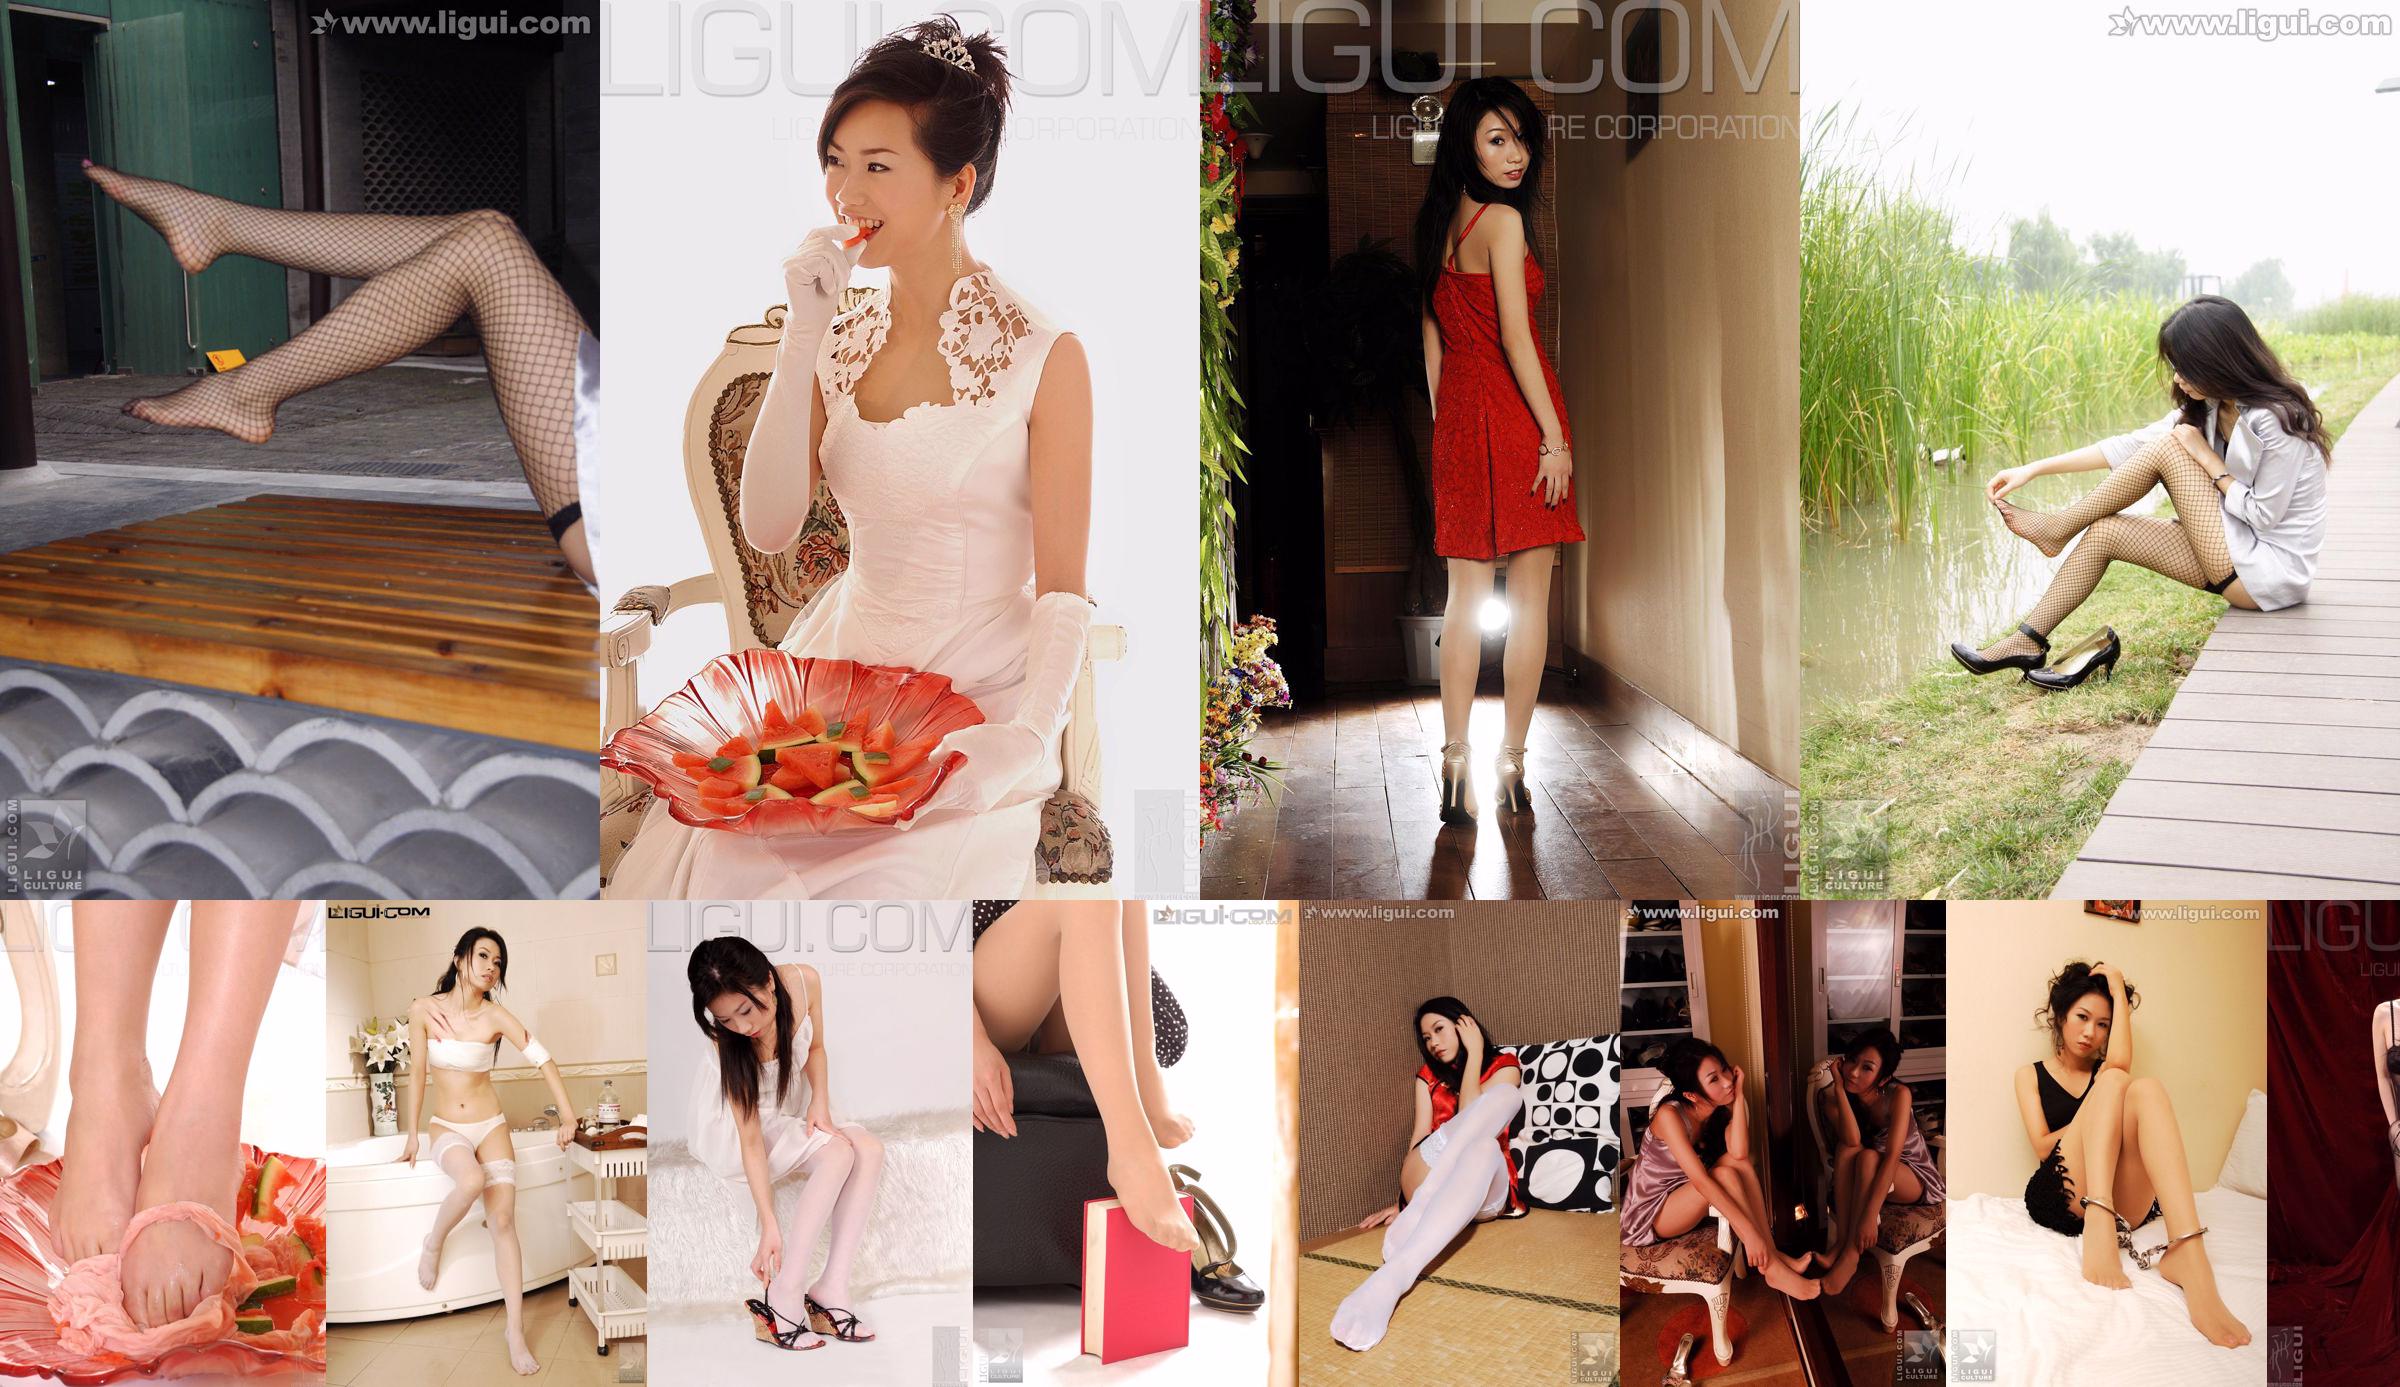 [丽 柜 LiGui] Modelo Cheng Hailun Pijamas + Foto de pie de seda blanca No.0693c2 Página 3